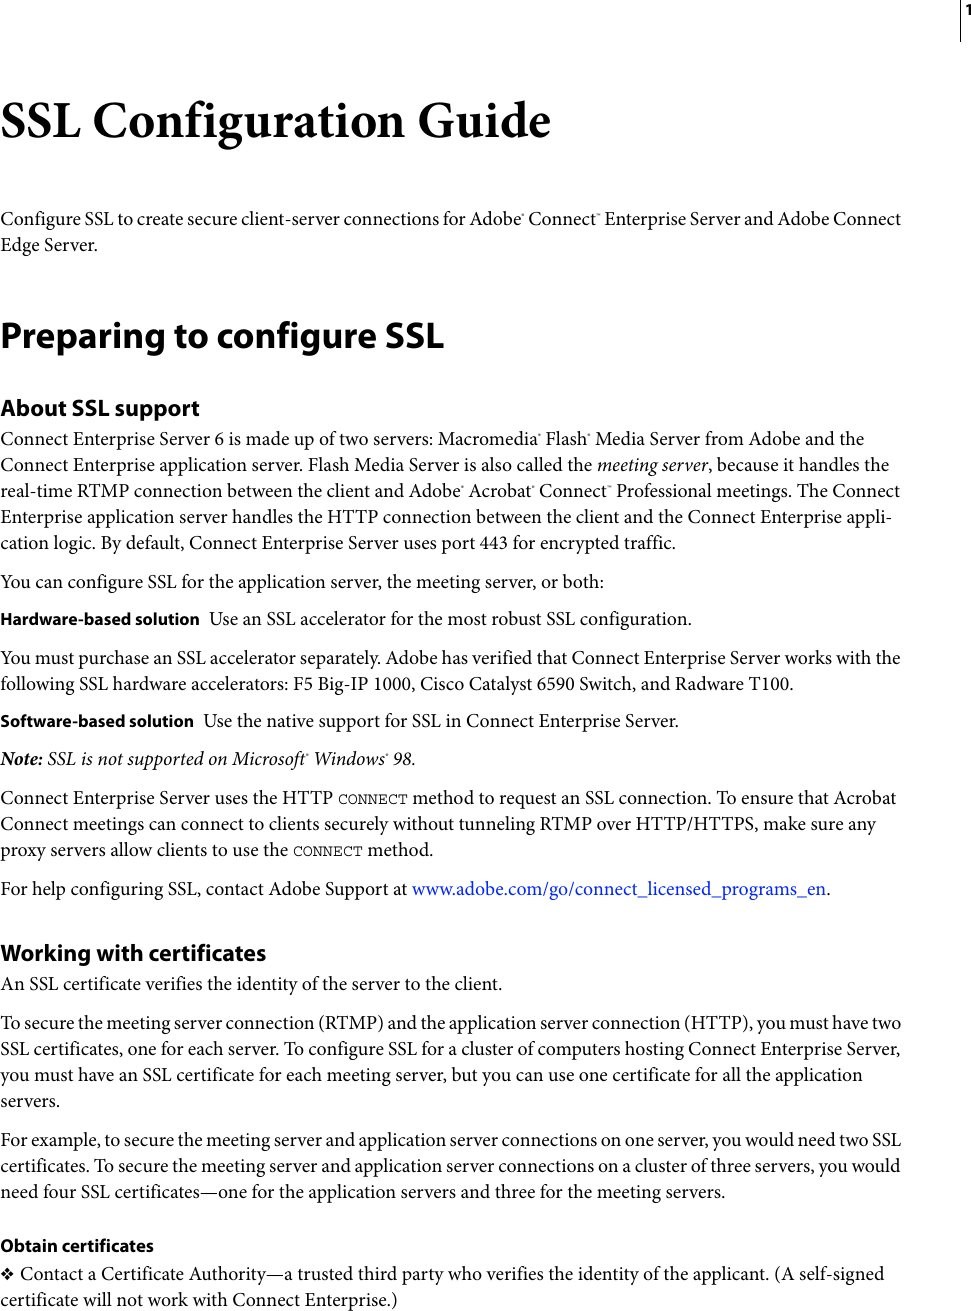 Page 4 of 12 - Adobe Connect Enterprise Server 6 SSL Configuration Guide Entreprise - 6.0 En